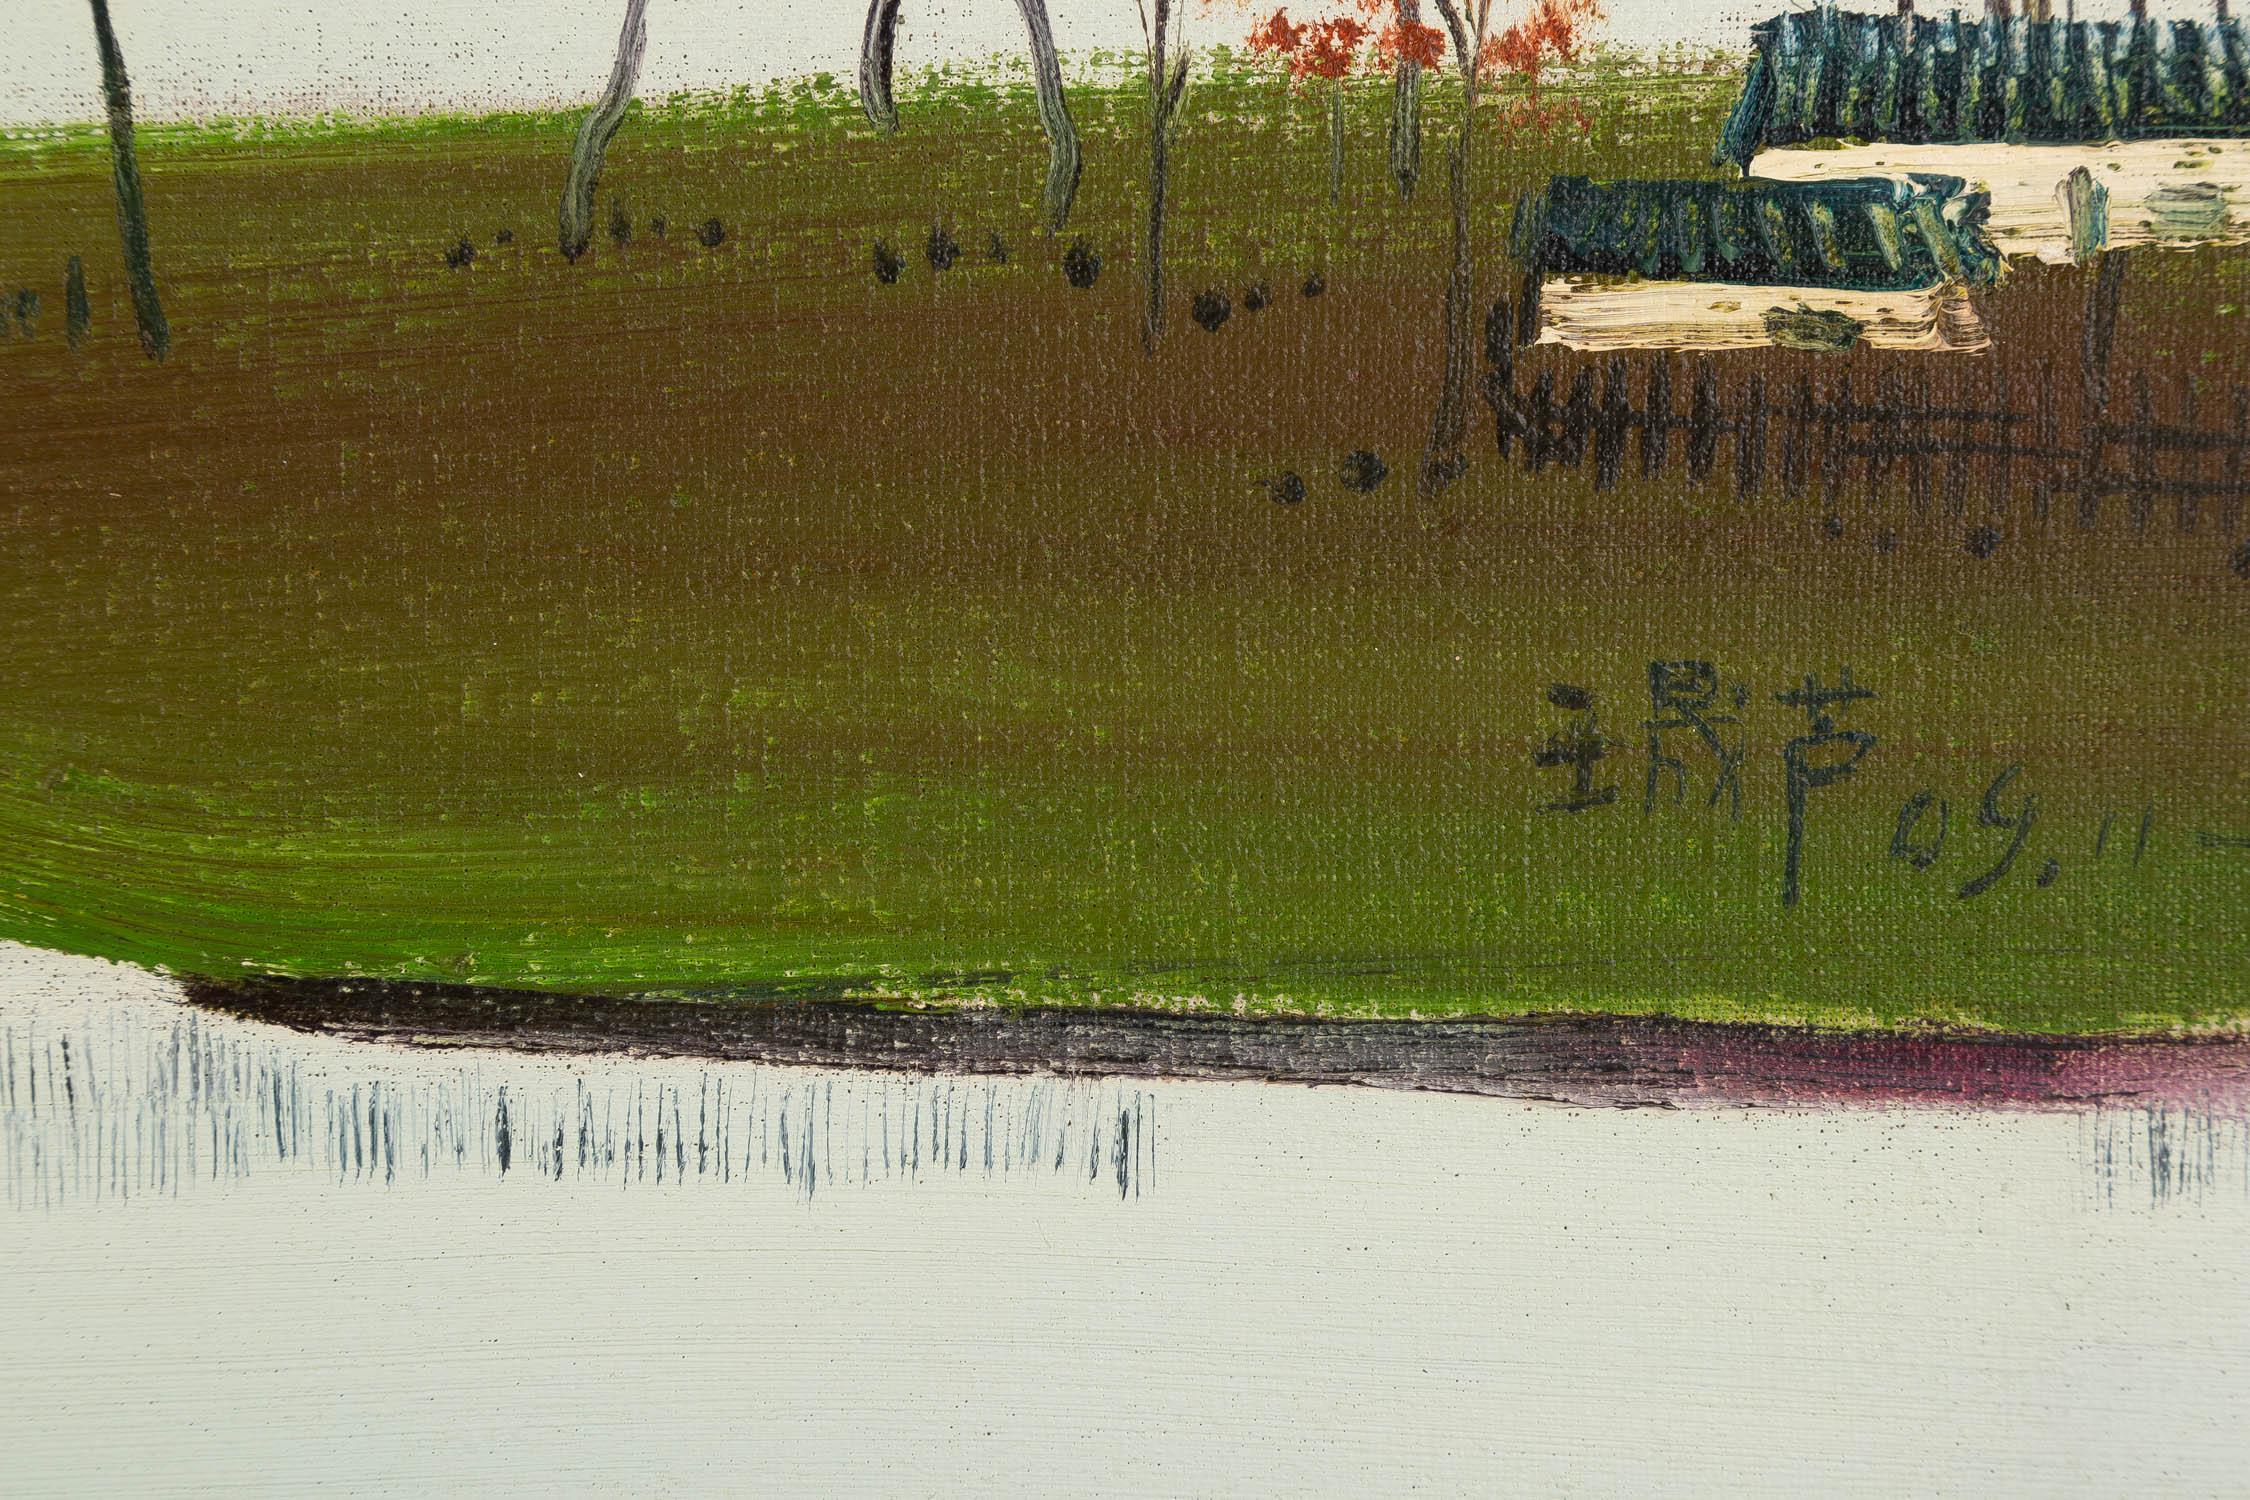 Shenglu Wang Peinture à l'huile impressionniste originale 